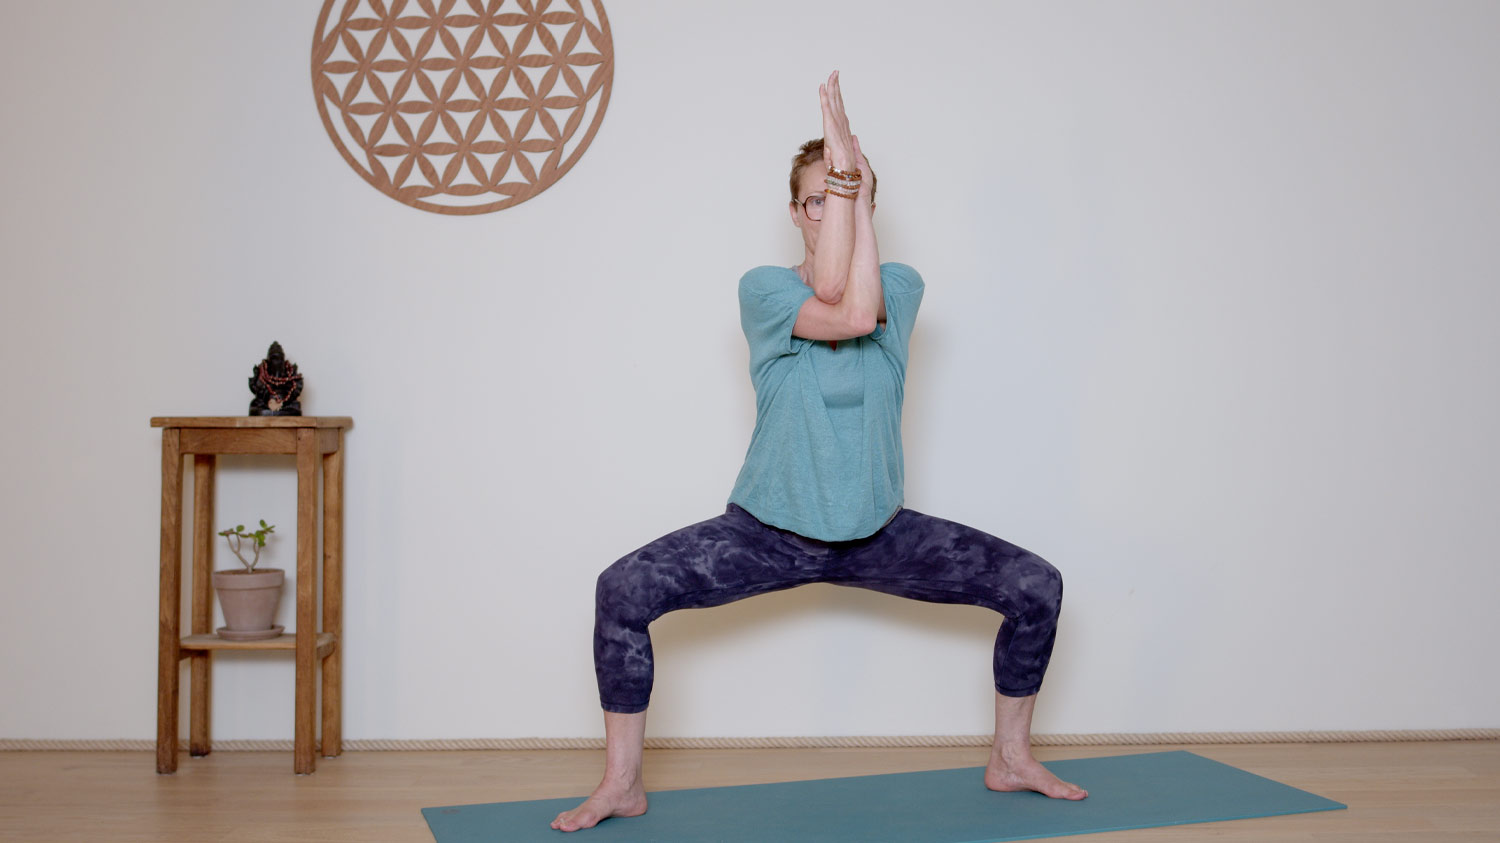 Hatha Yoga dynamique - 30 minutes - Corps de joie | Cours de yoga en ligne avec Delphine Denis | Hatha Yoga dynamique